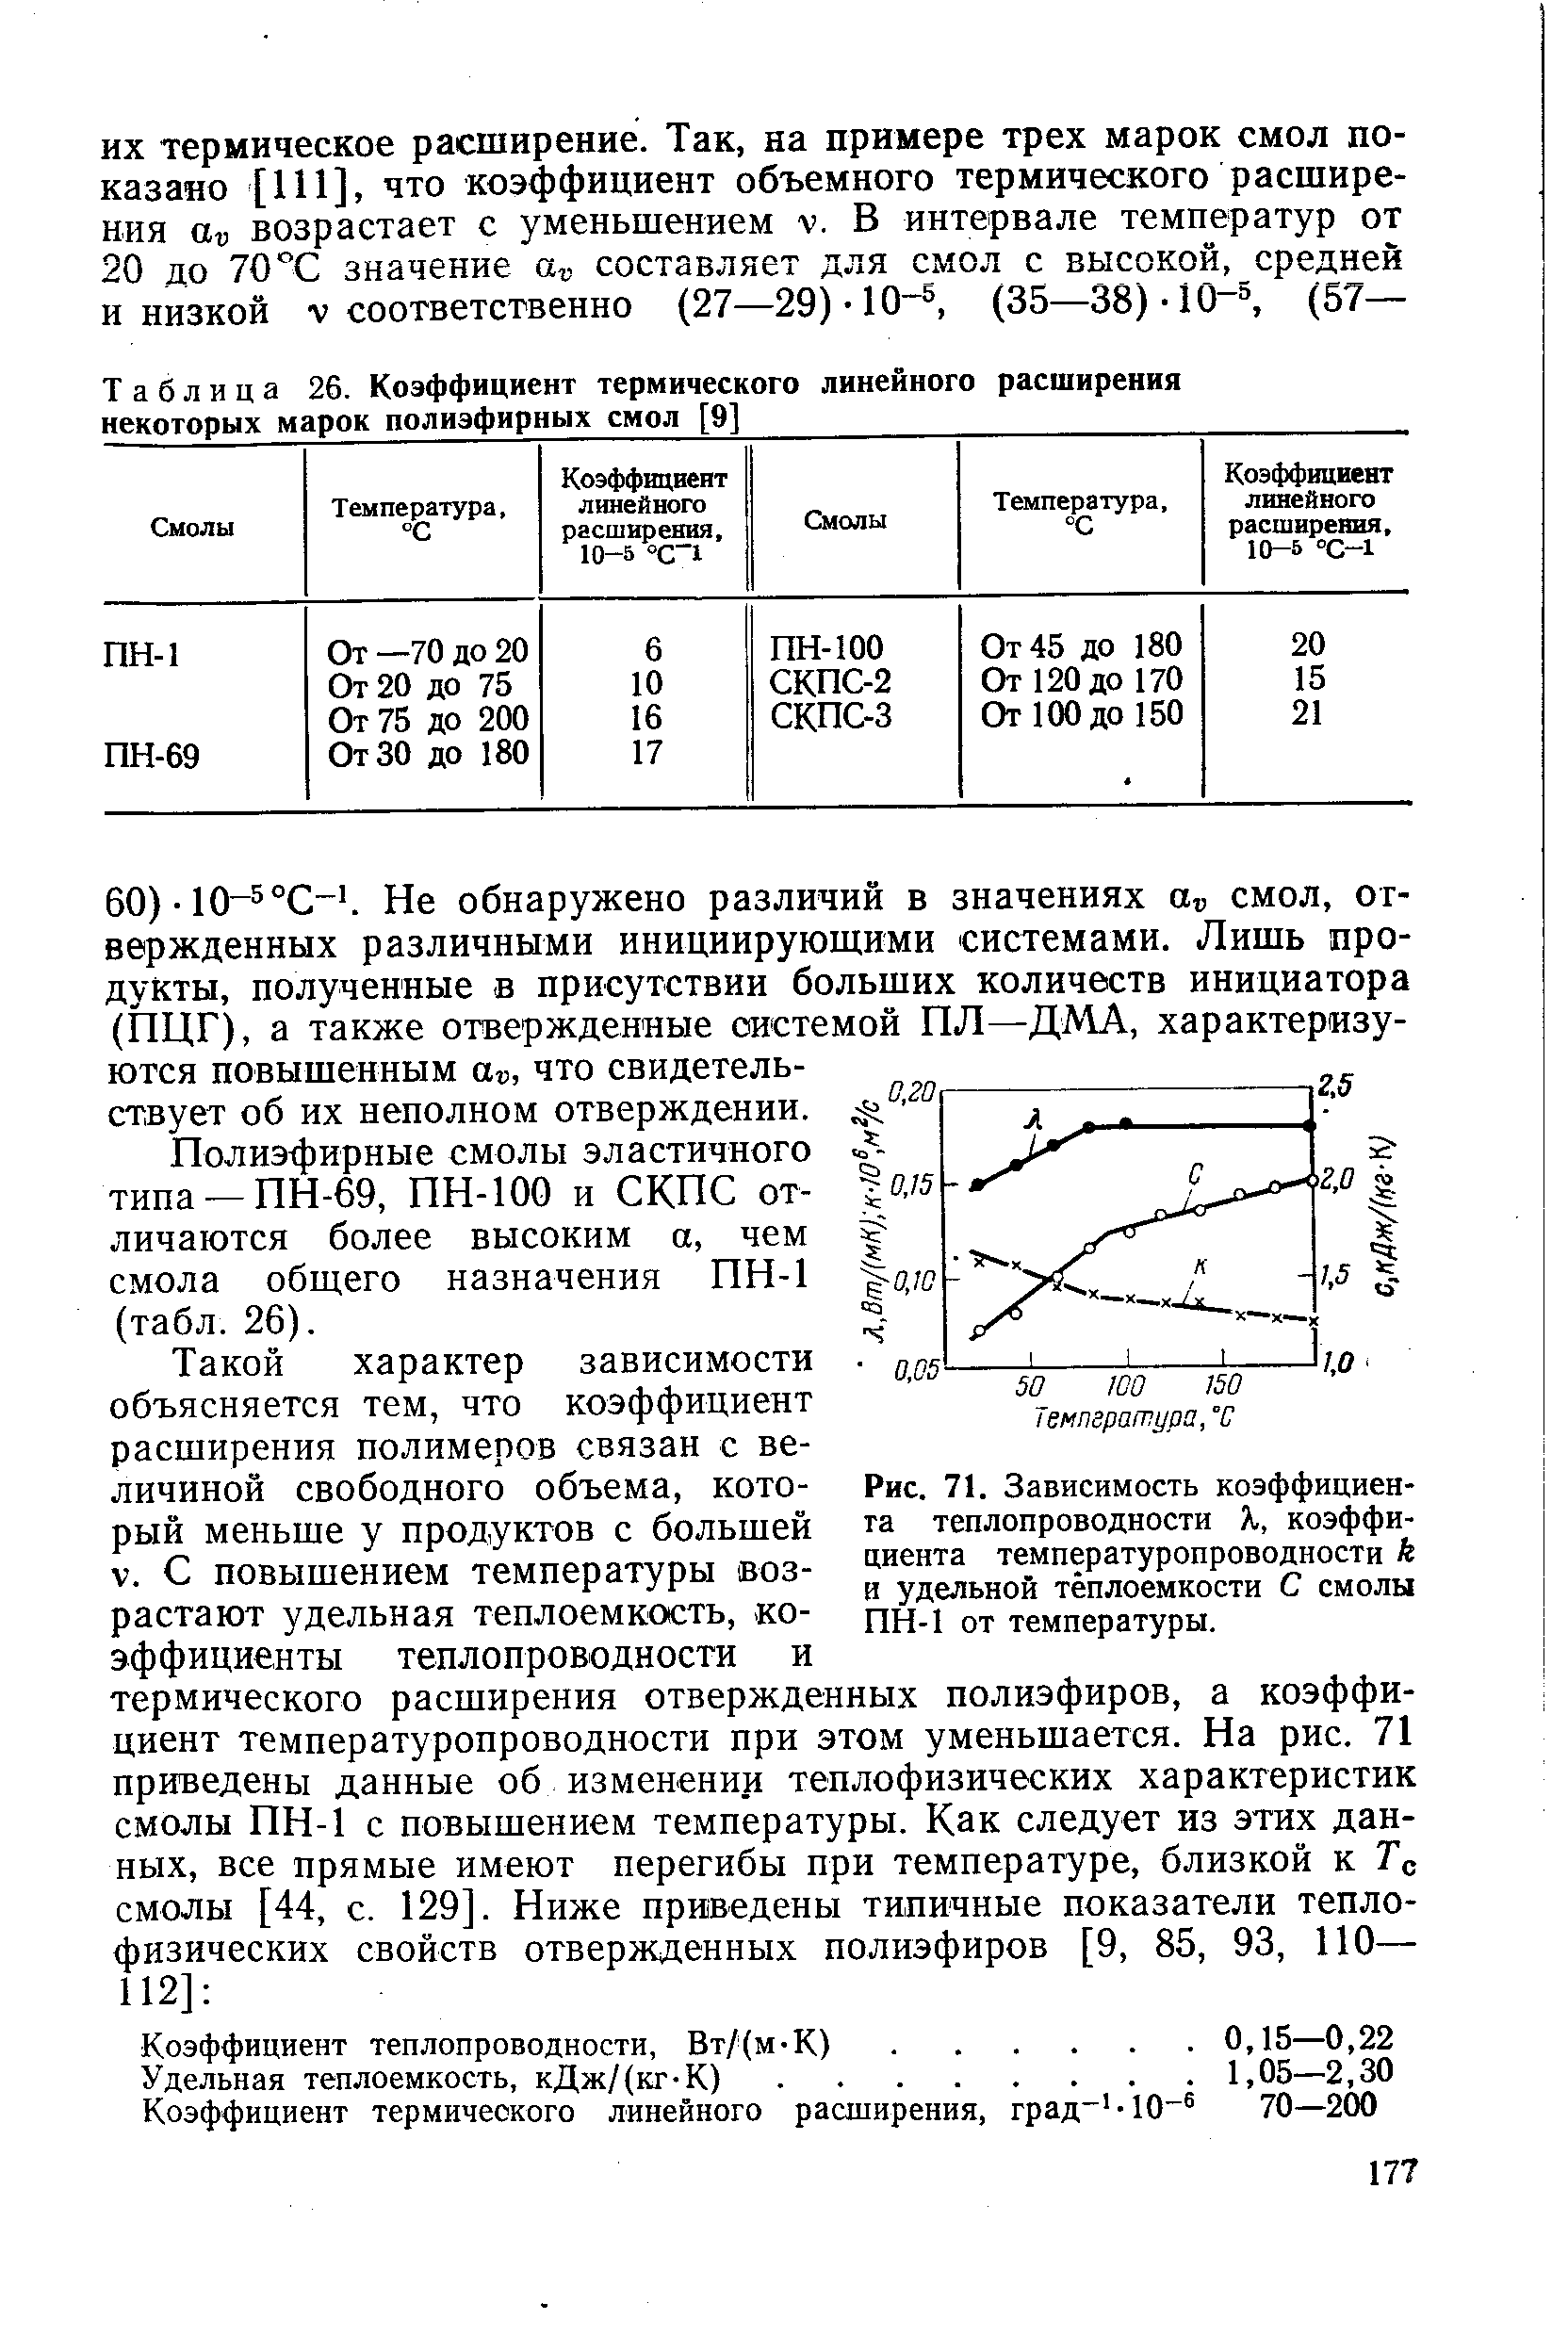 Полиэфирные смолы эластичного типа —ПН-69, ПН-100 и СКПС отличаются более высоким а, чем смола общего назначения ПН-1 (табл. 26).